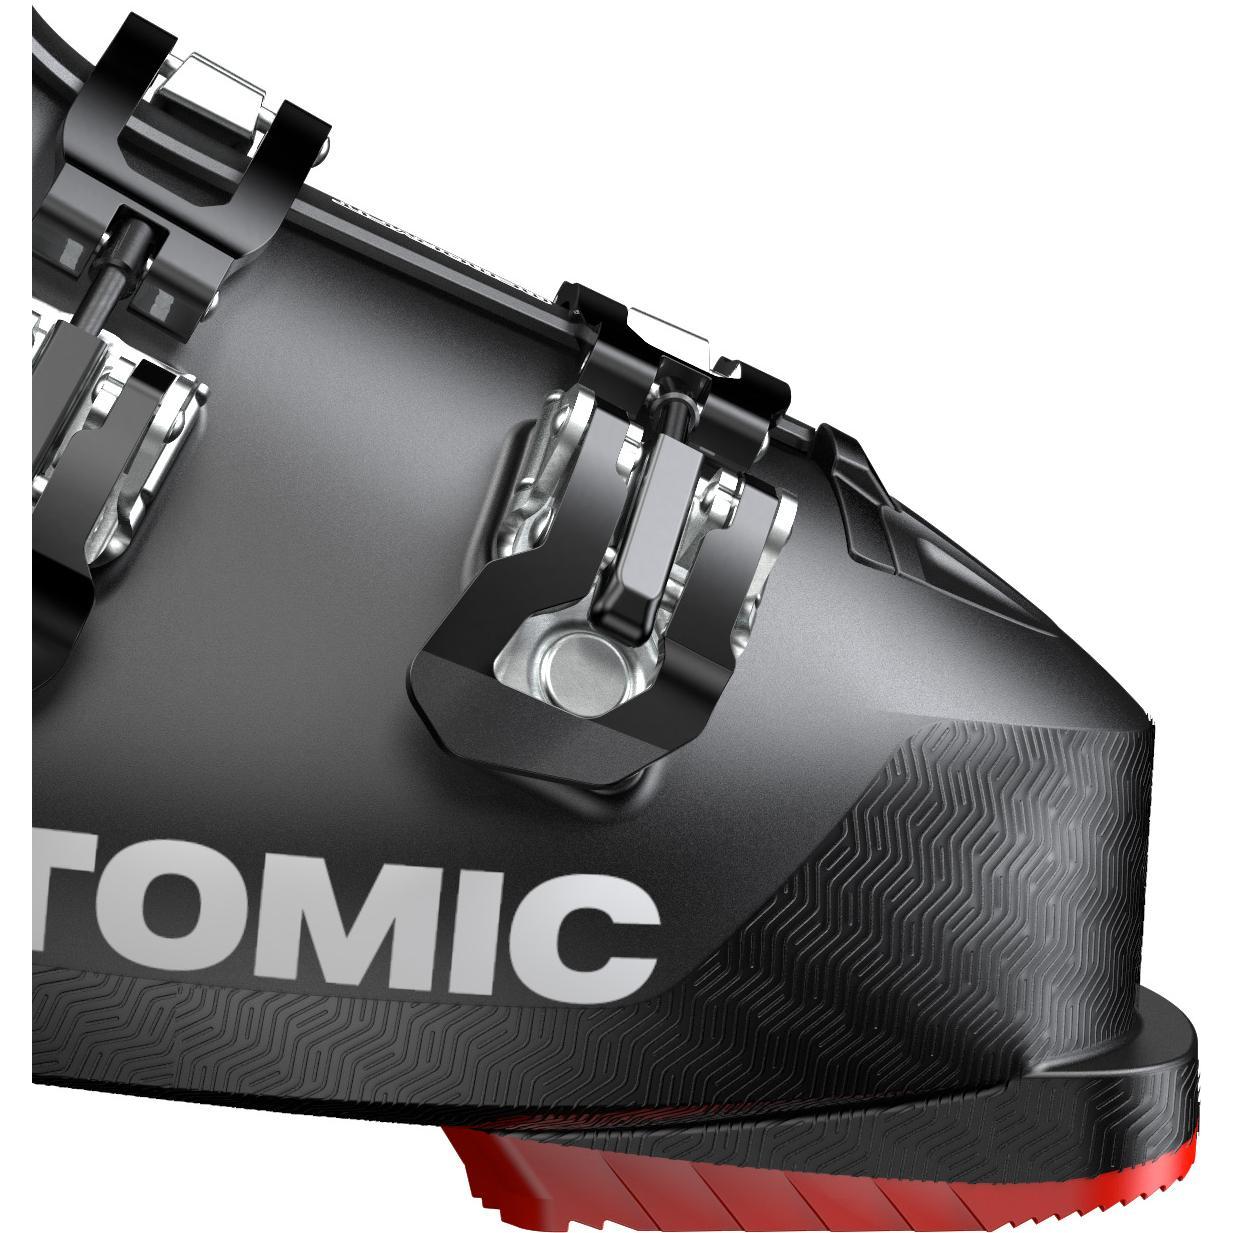 Горнолыжные ботинки ATOMIC HAWX PRIME 100 Black/Red